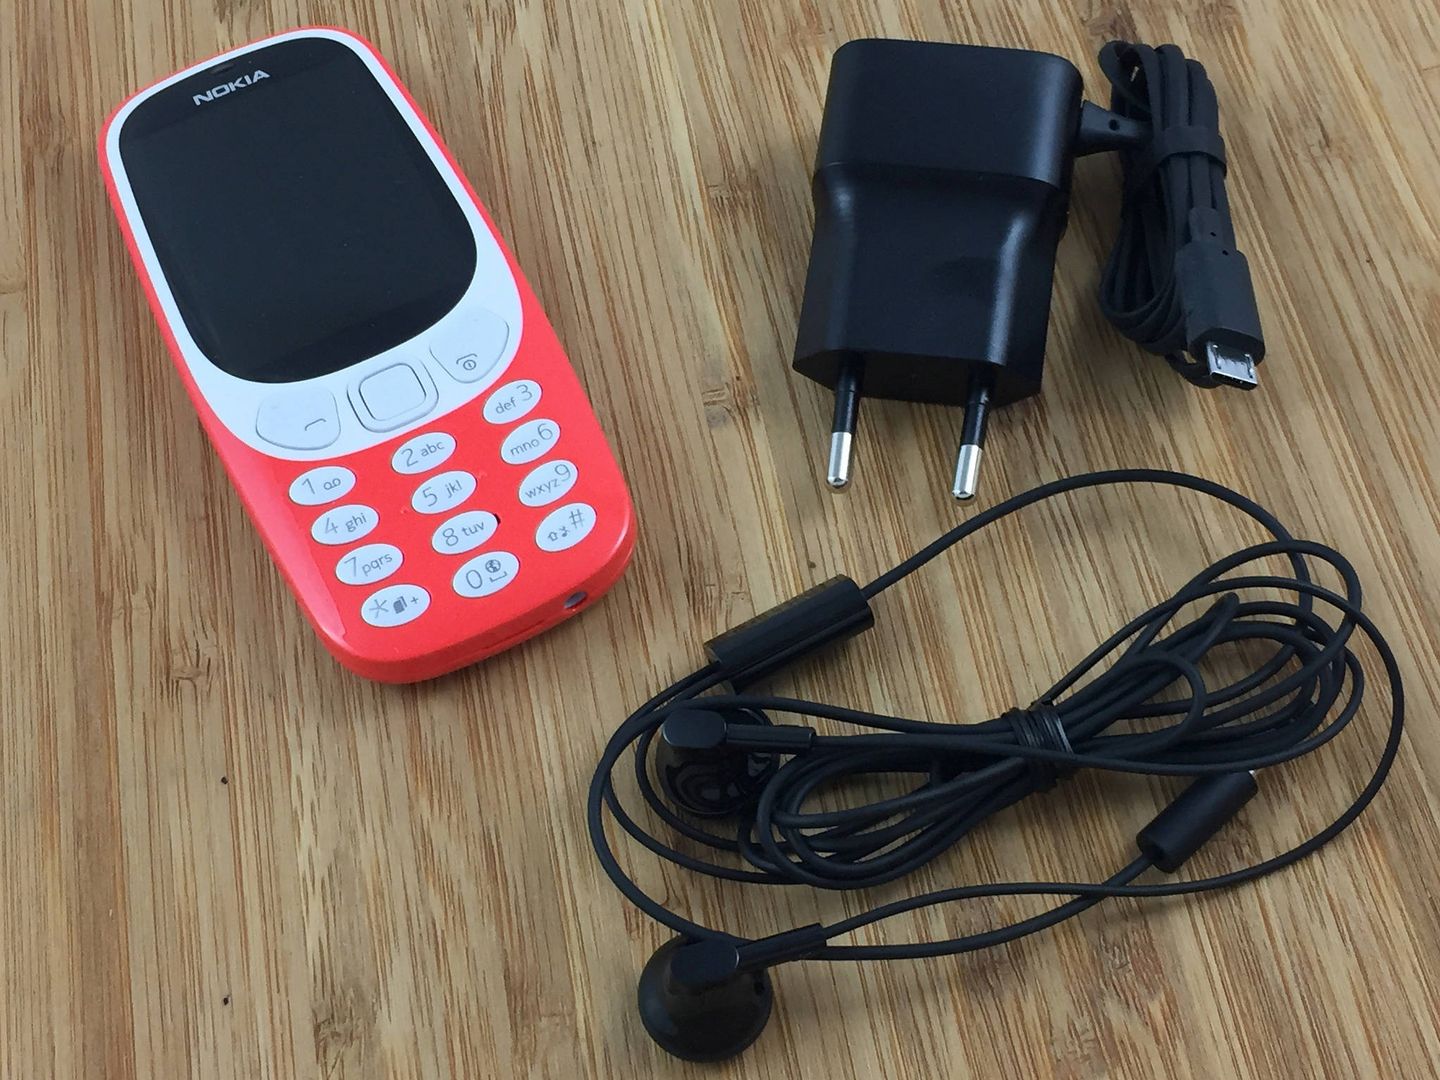  El nuevo Nokia 3310 ofrece privacidad y nada de internet a un precio más asequible (Imagen: Jay F Kay | Flickr)